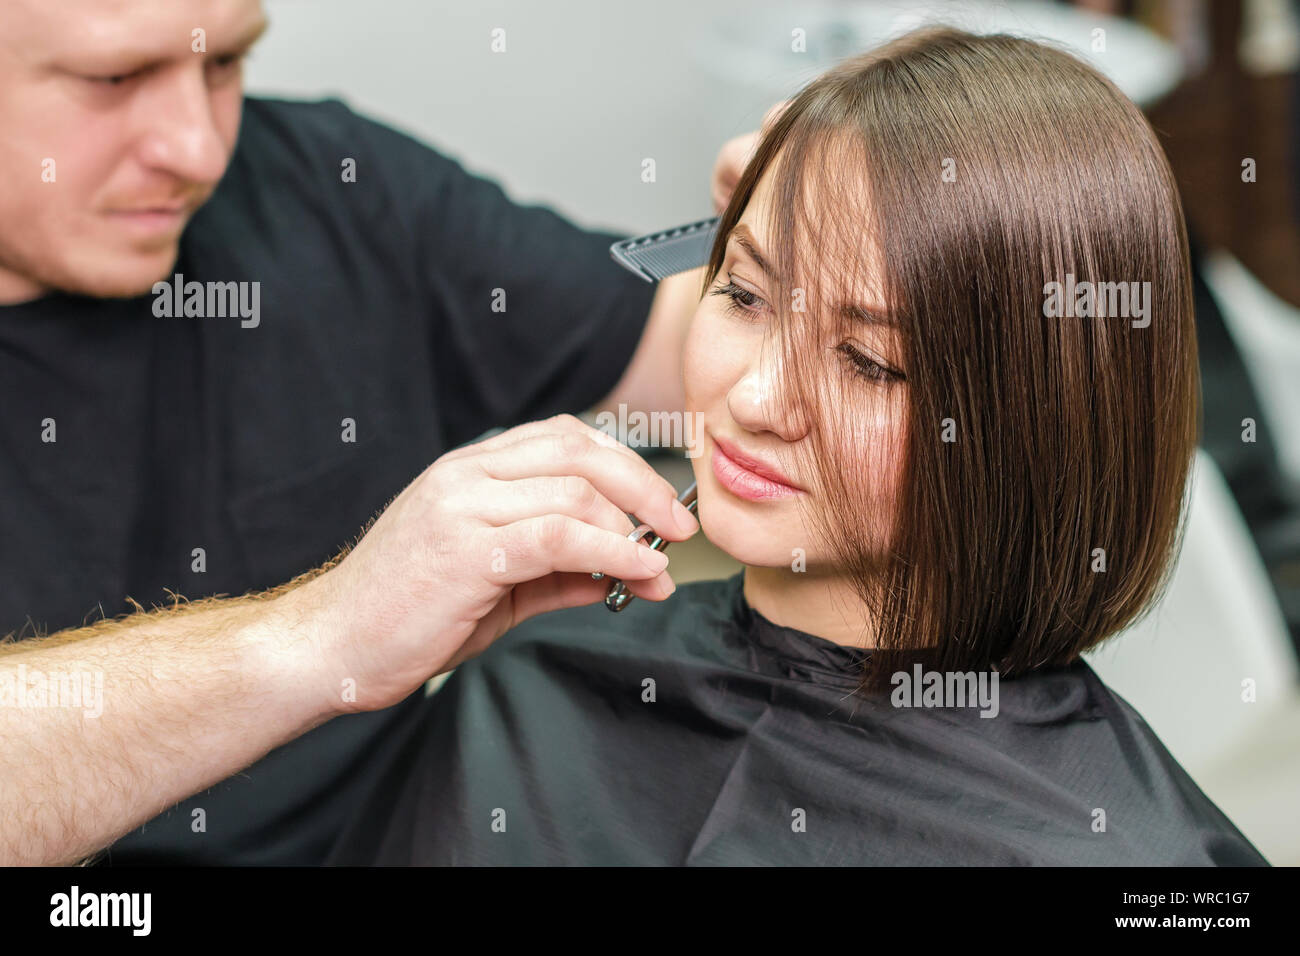 Professionelle Friseur Haare Schneiden Des Kunden In Einem Schonheitssalon Kurze Frisur Machen Stockfotografie Alamy